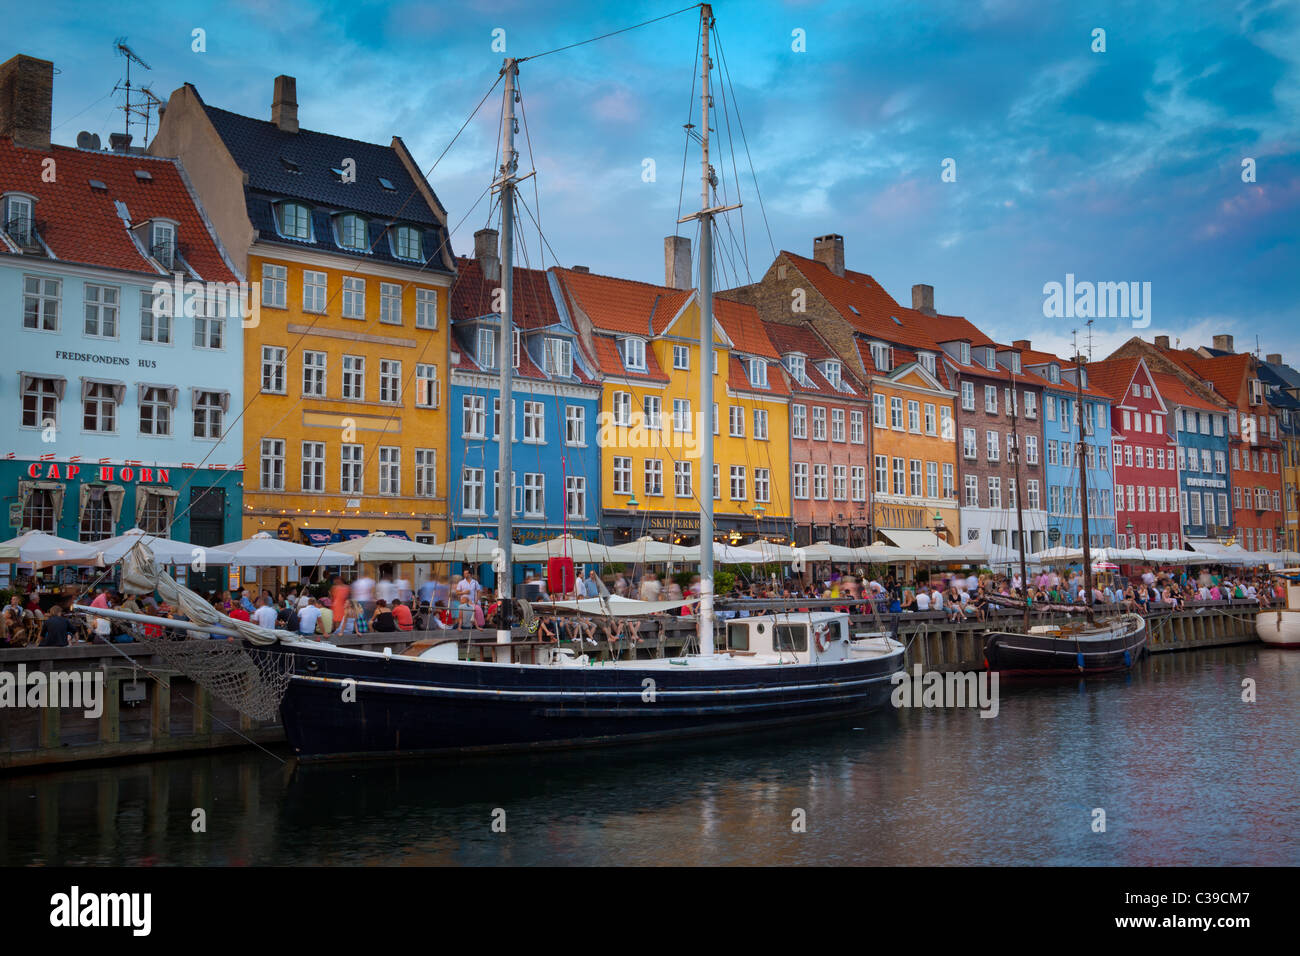 Nyhavn ist eine bunte 17. Jahrhundert am Wasser, Kanal und beliebten Vergnügungsviertel in Kopenhagen, Dänemark. Stockfoto